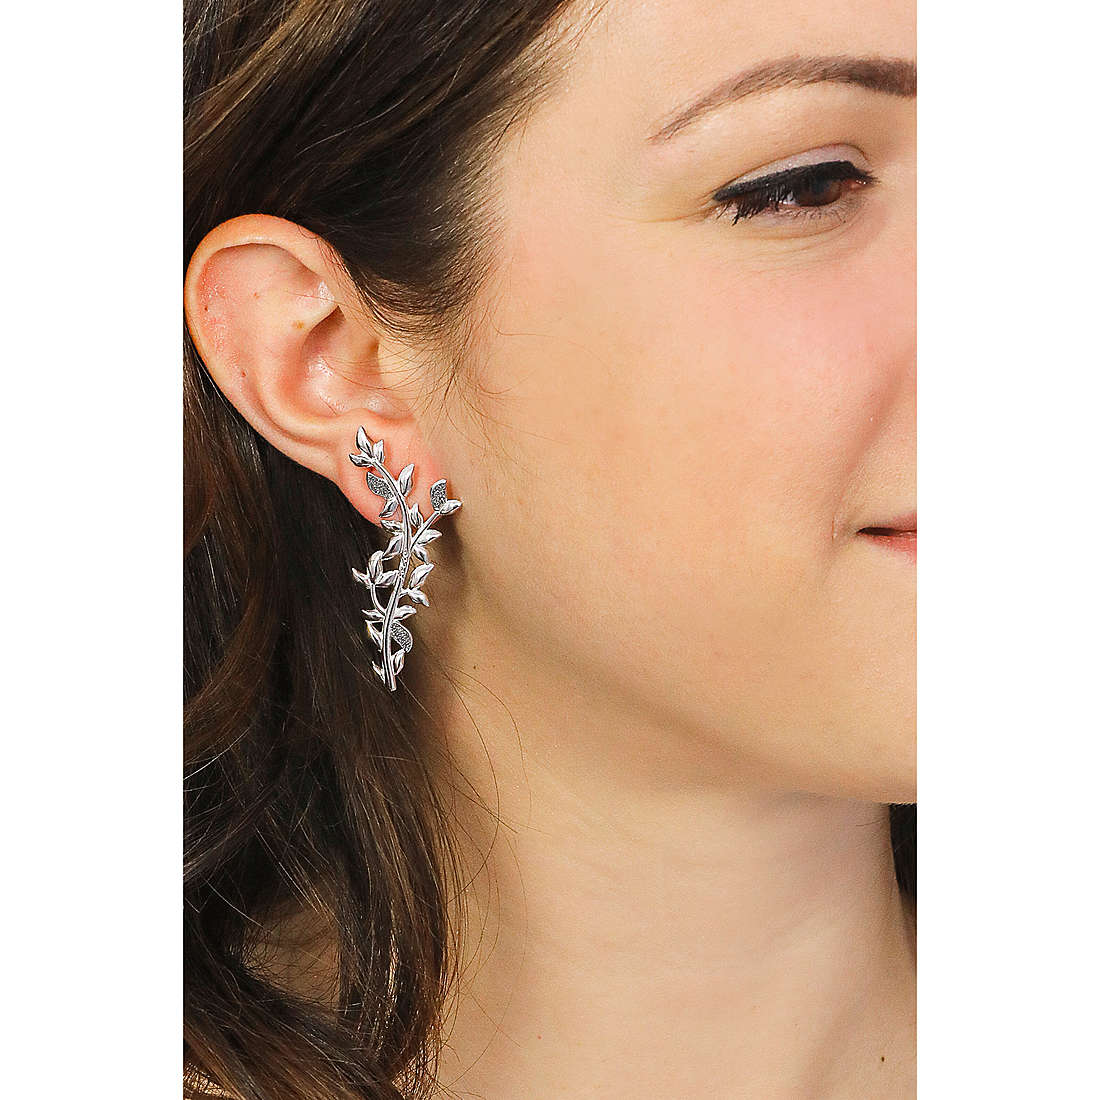 Rebecca earrings Jolie woman SJOOAA92 wearing